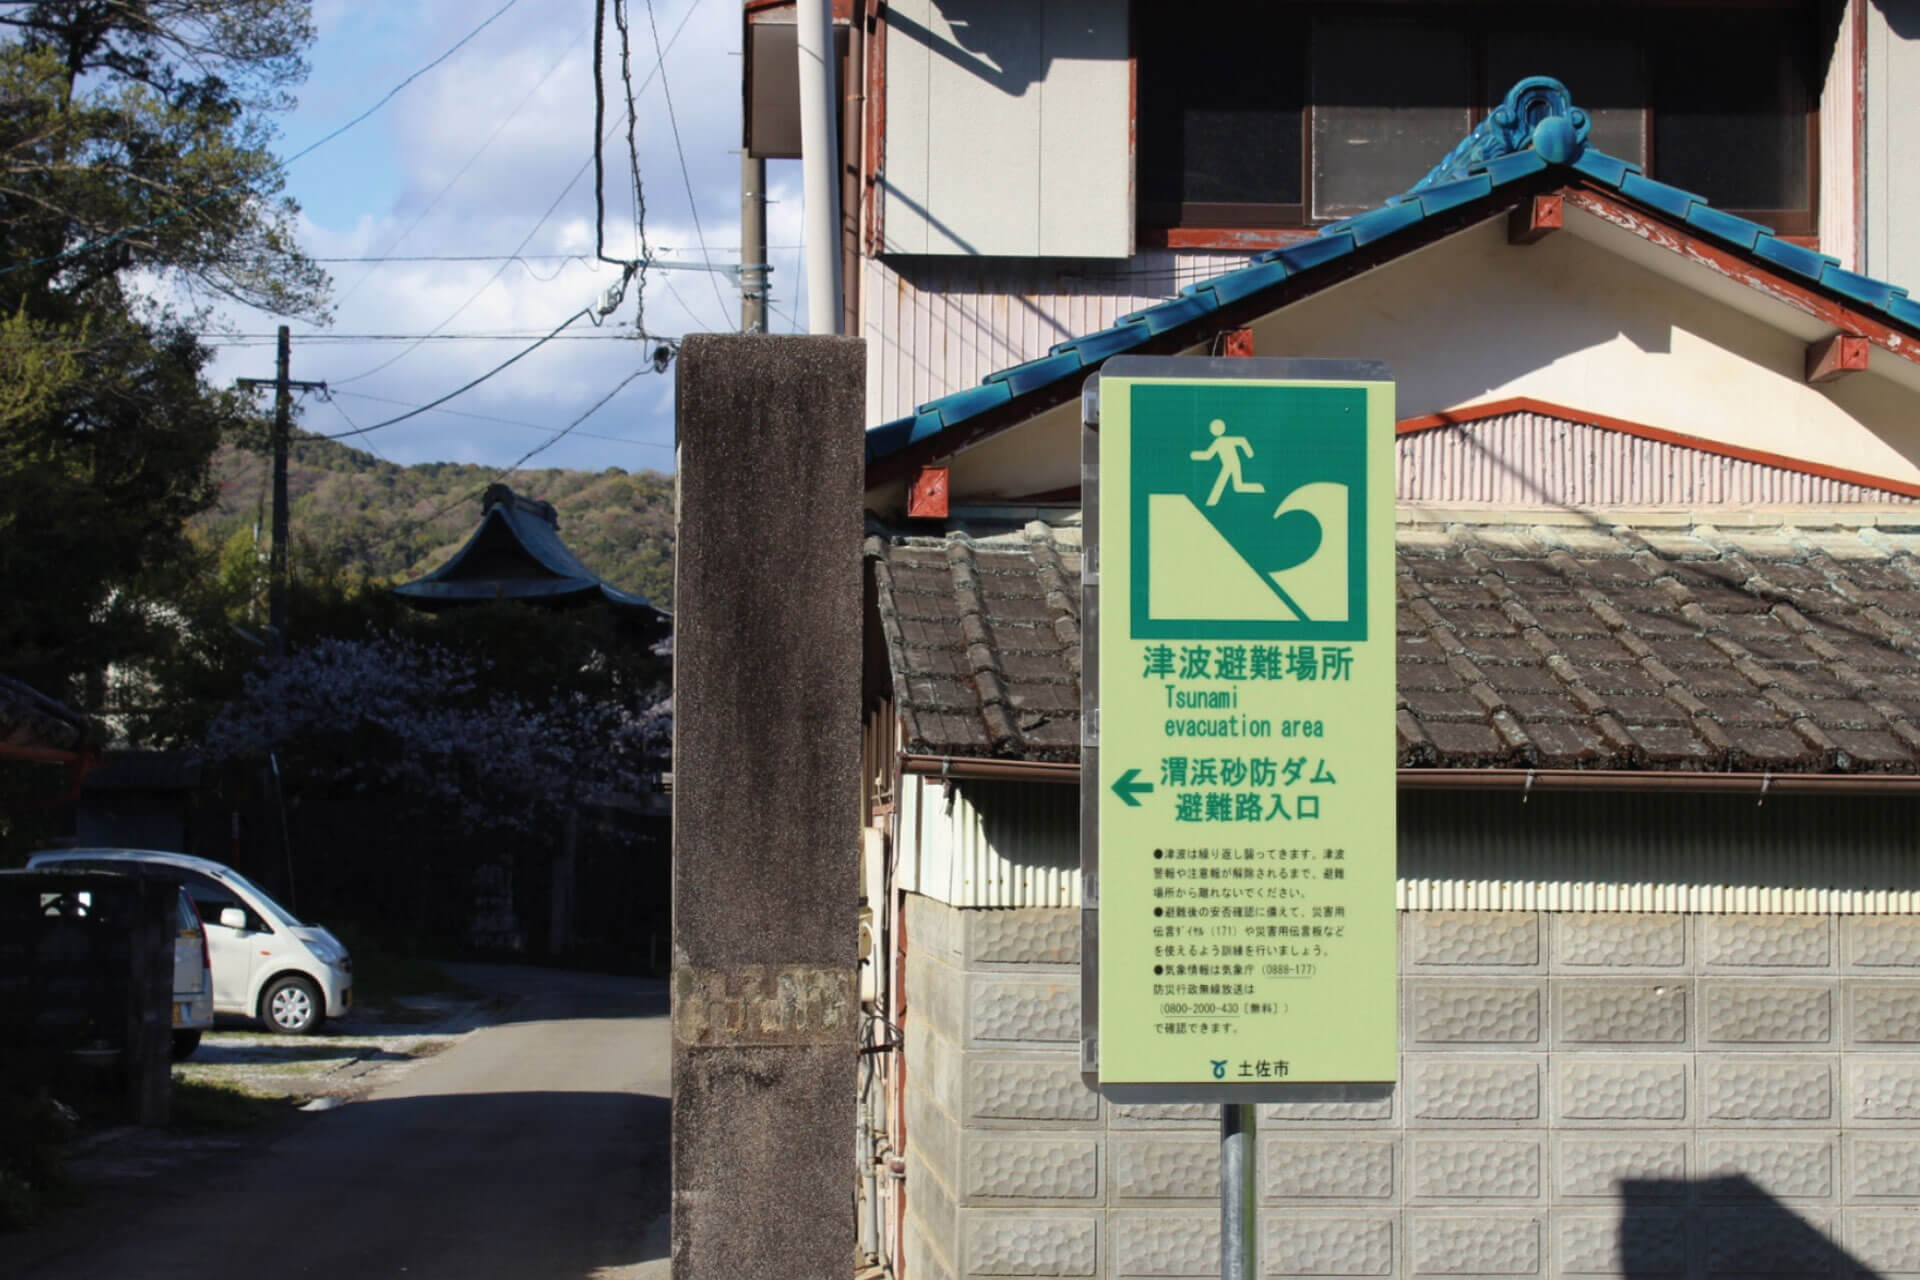 高知県土佐市の住宅地に設置されている渭浜砂防ダム避難路入口と表記されたアベイラス アルシオール サインプレート（高輝度蓄光式屋外用案内標示板）の表側